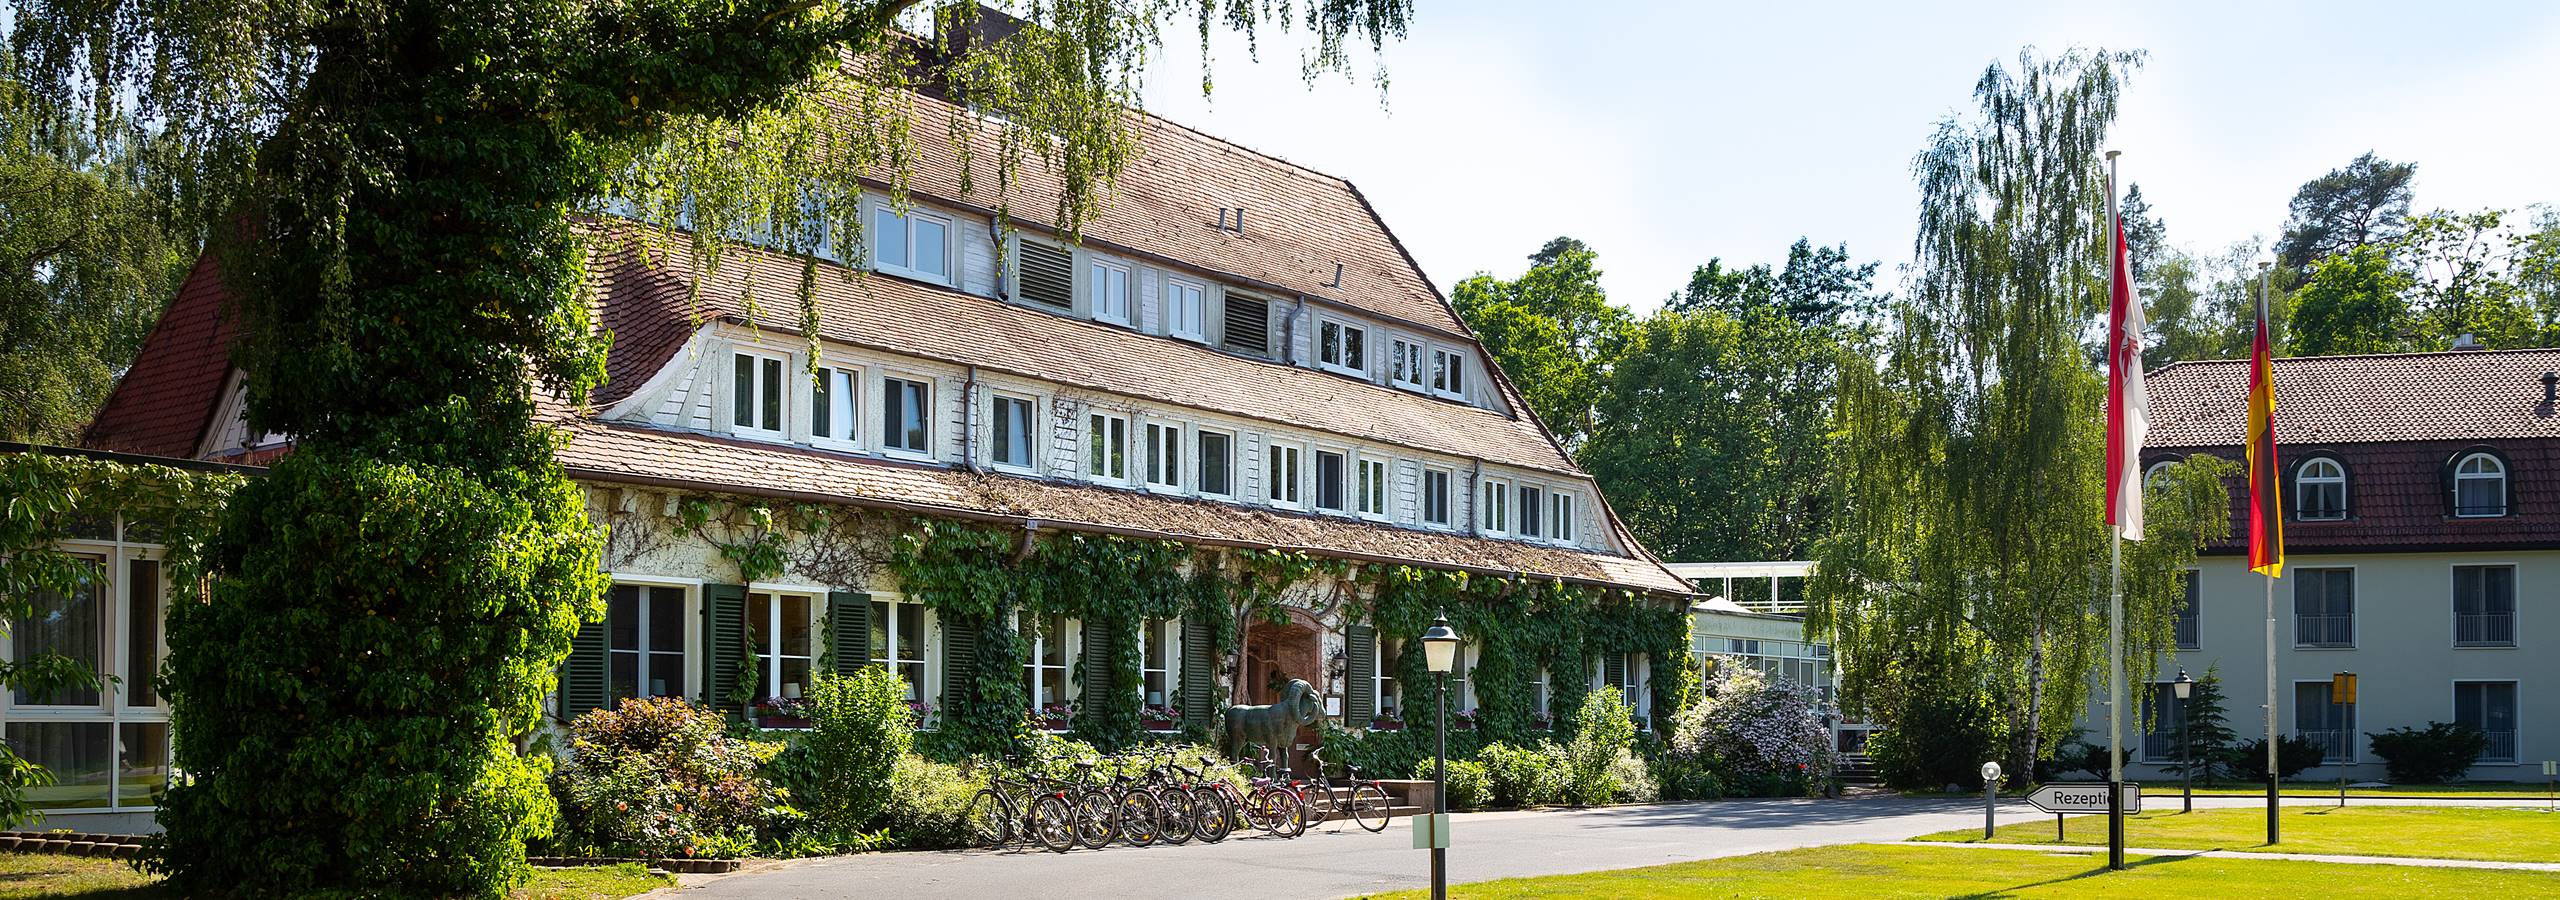 Hotel Döllnsee-Schorfheide - Familienhotel und Tagungshotel in Brandenburg bei Berlin